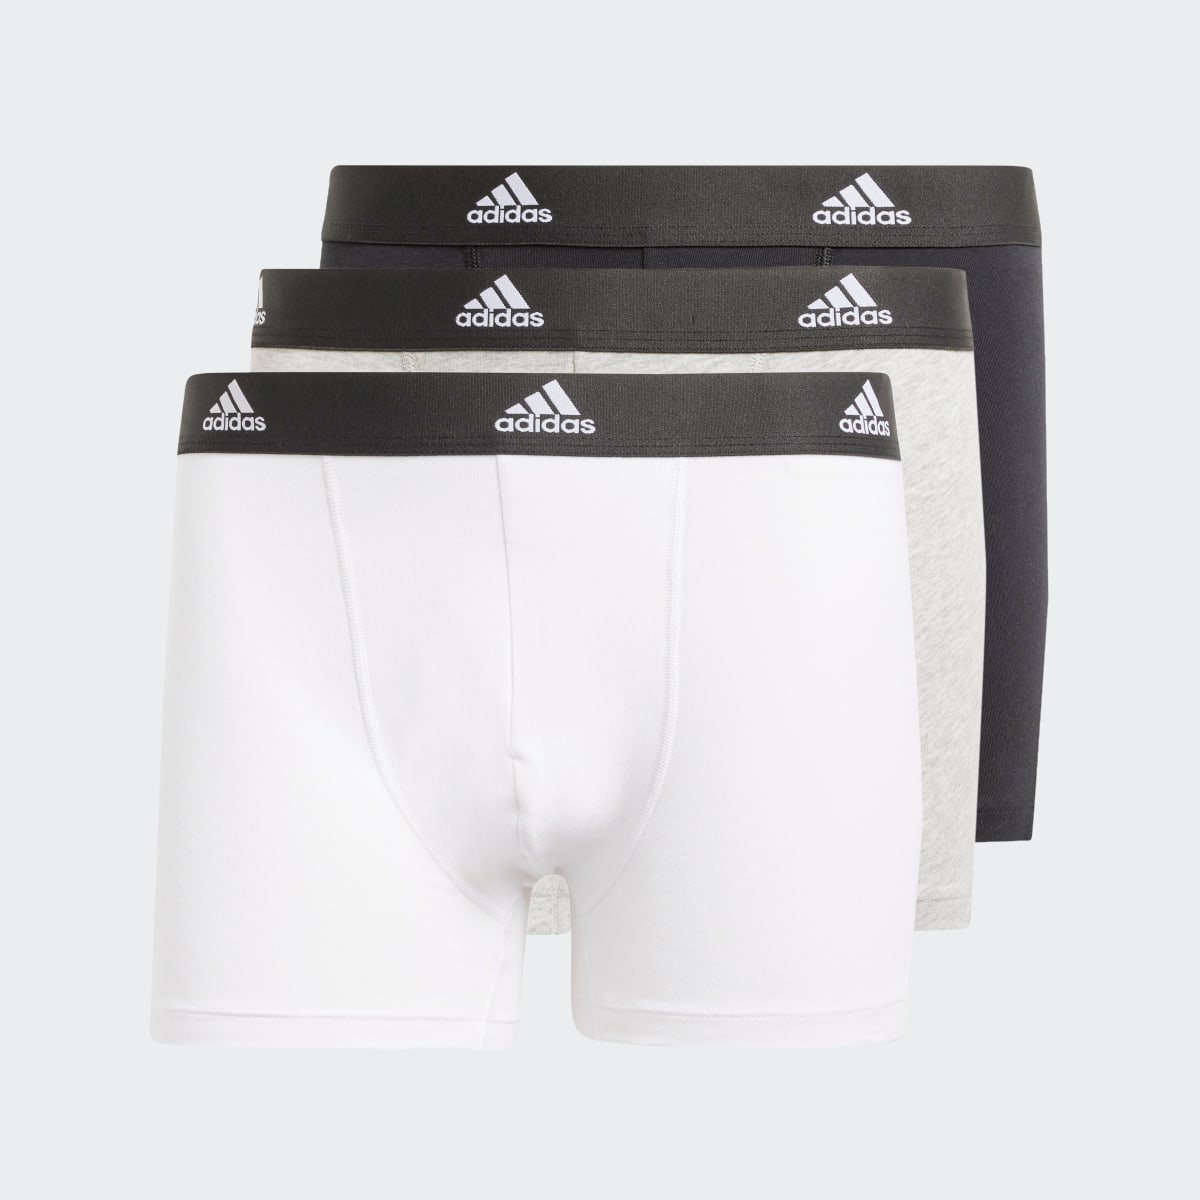 Adidas Active Flex Cotton Trunk Underwear. 7